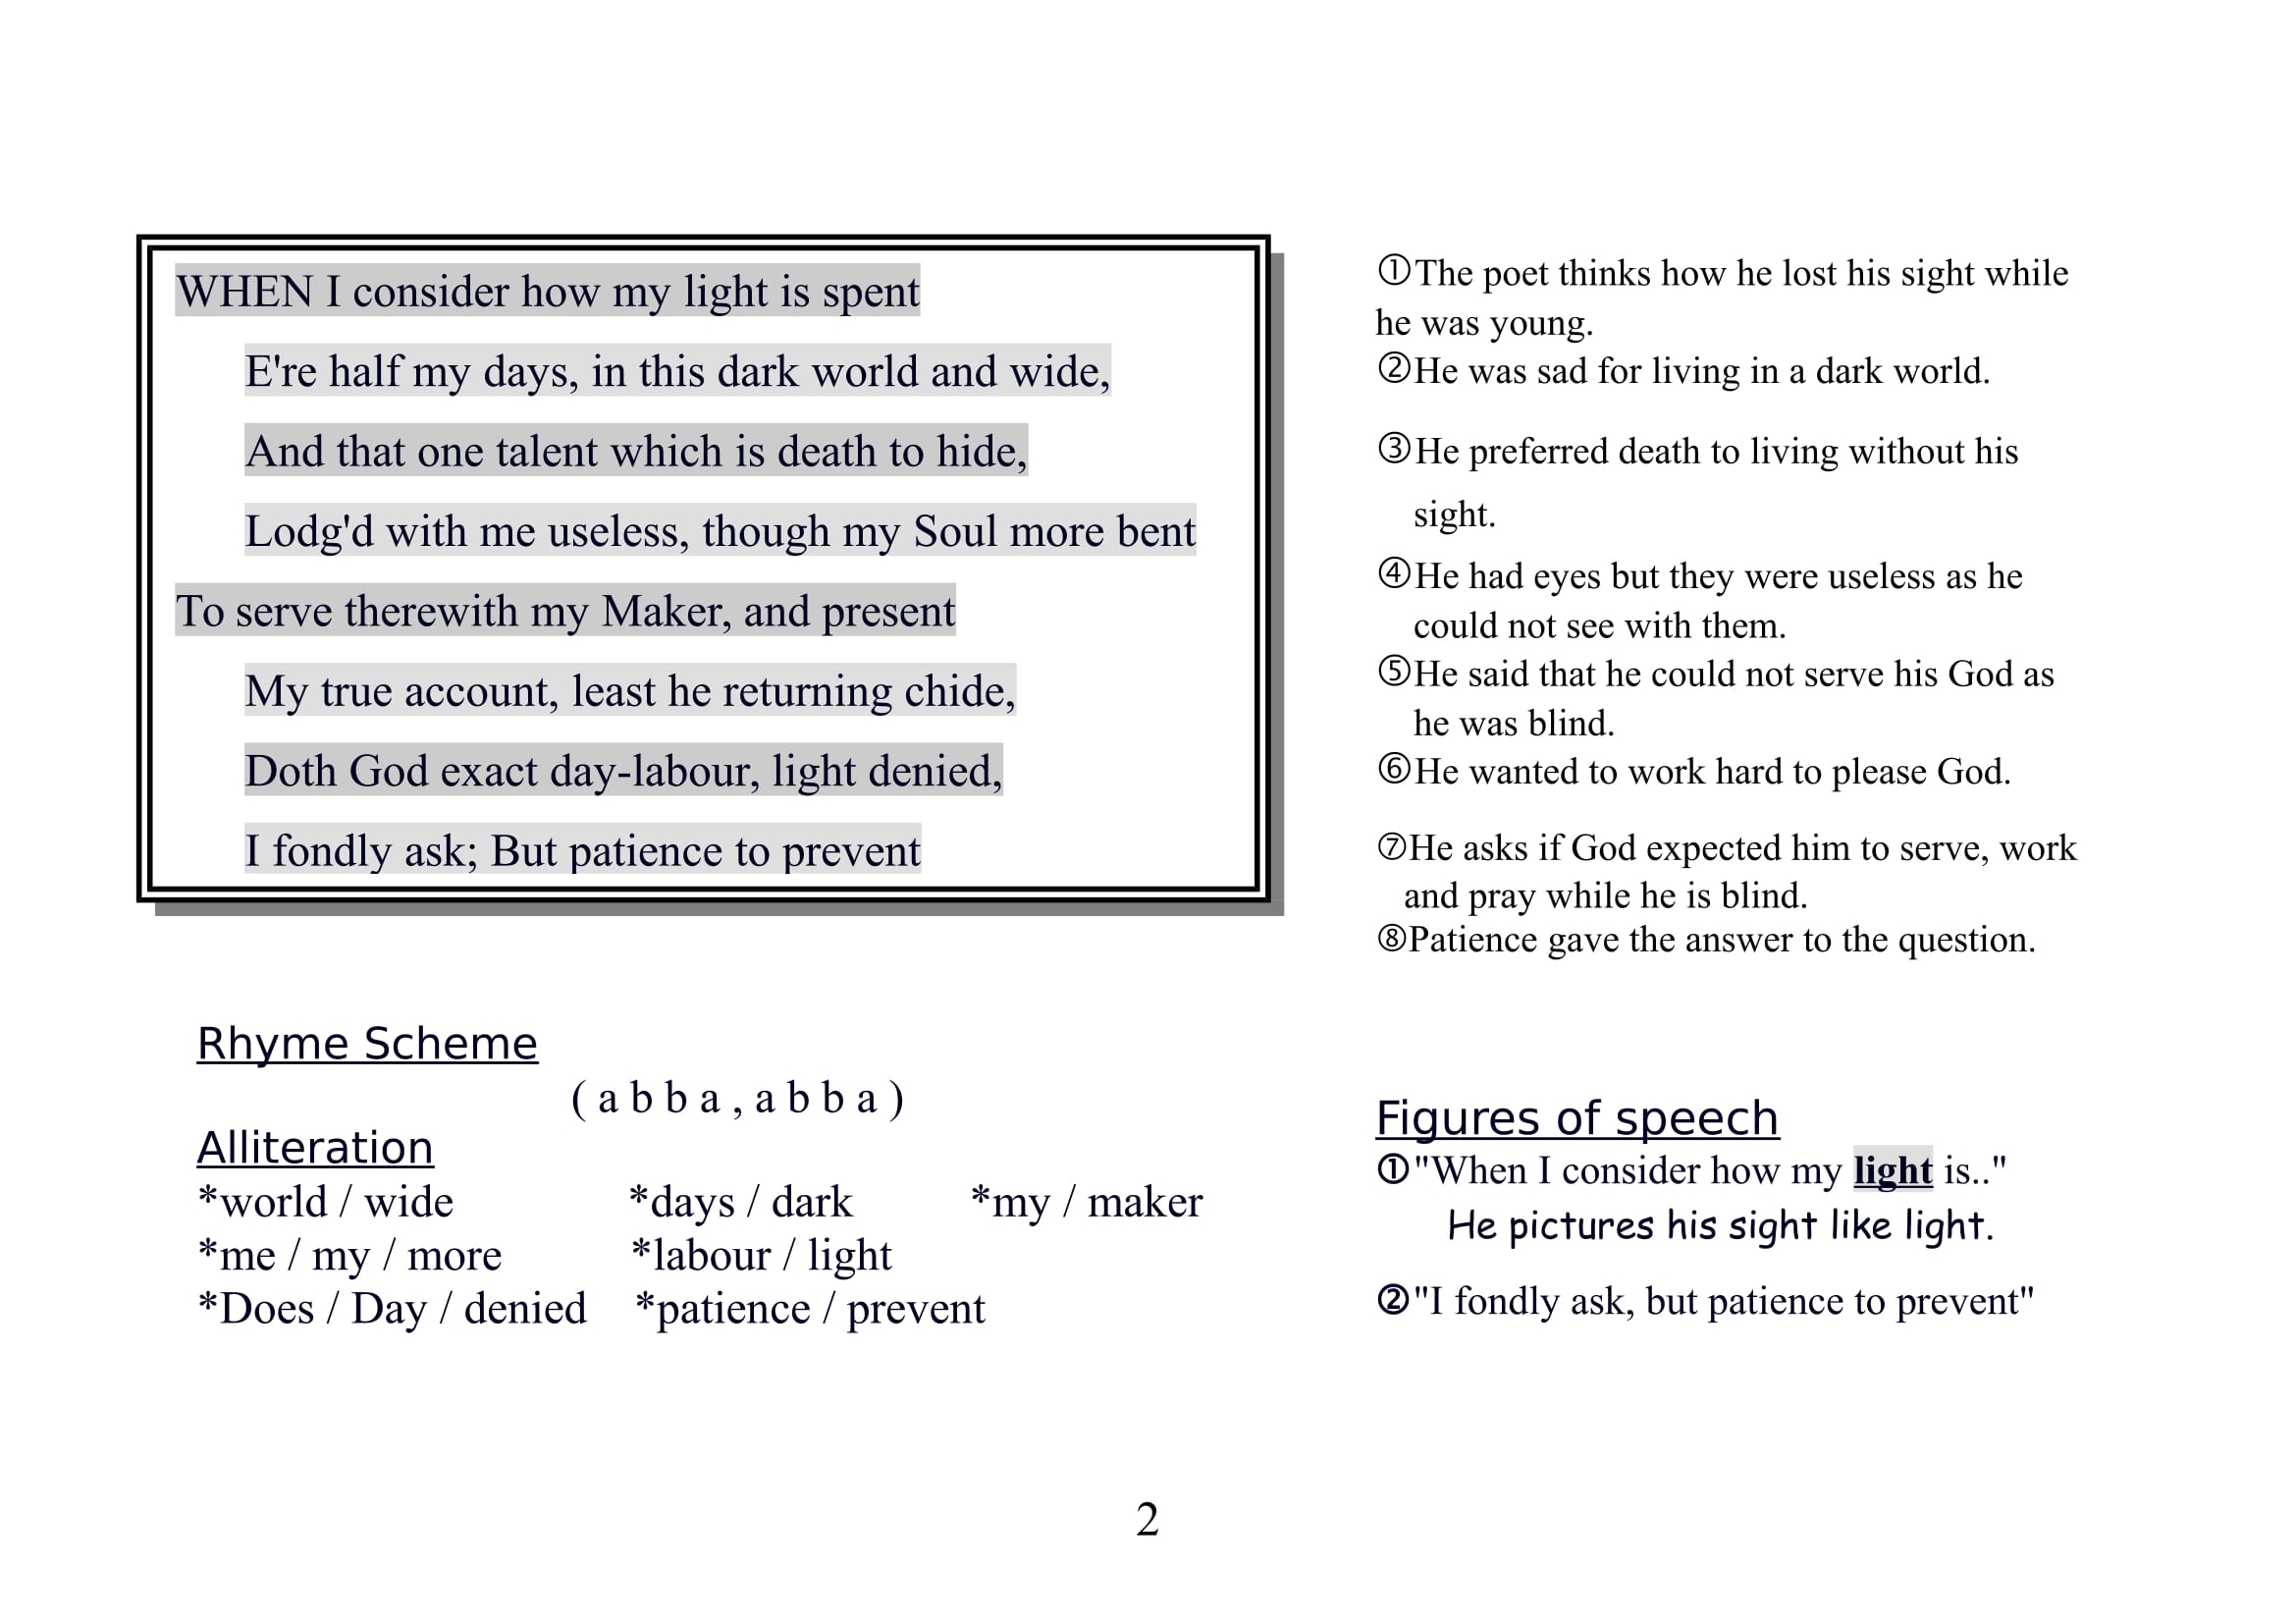 ملزمة س و ج لقصيدة On his blindness فى Poetry اللغة الانجليزية (مستوى رفيع ) للصف الاول الثانوى اللغ